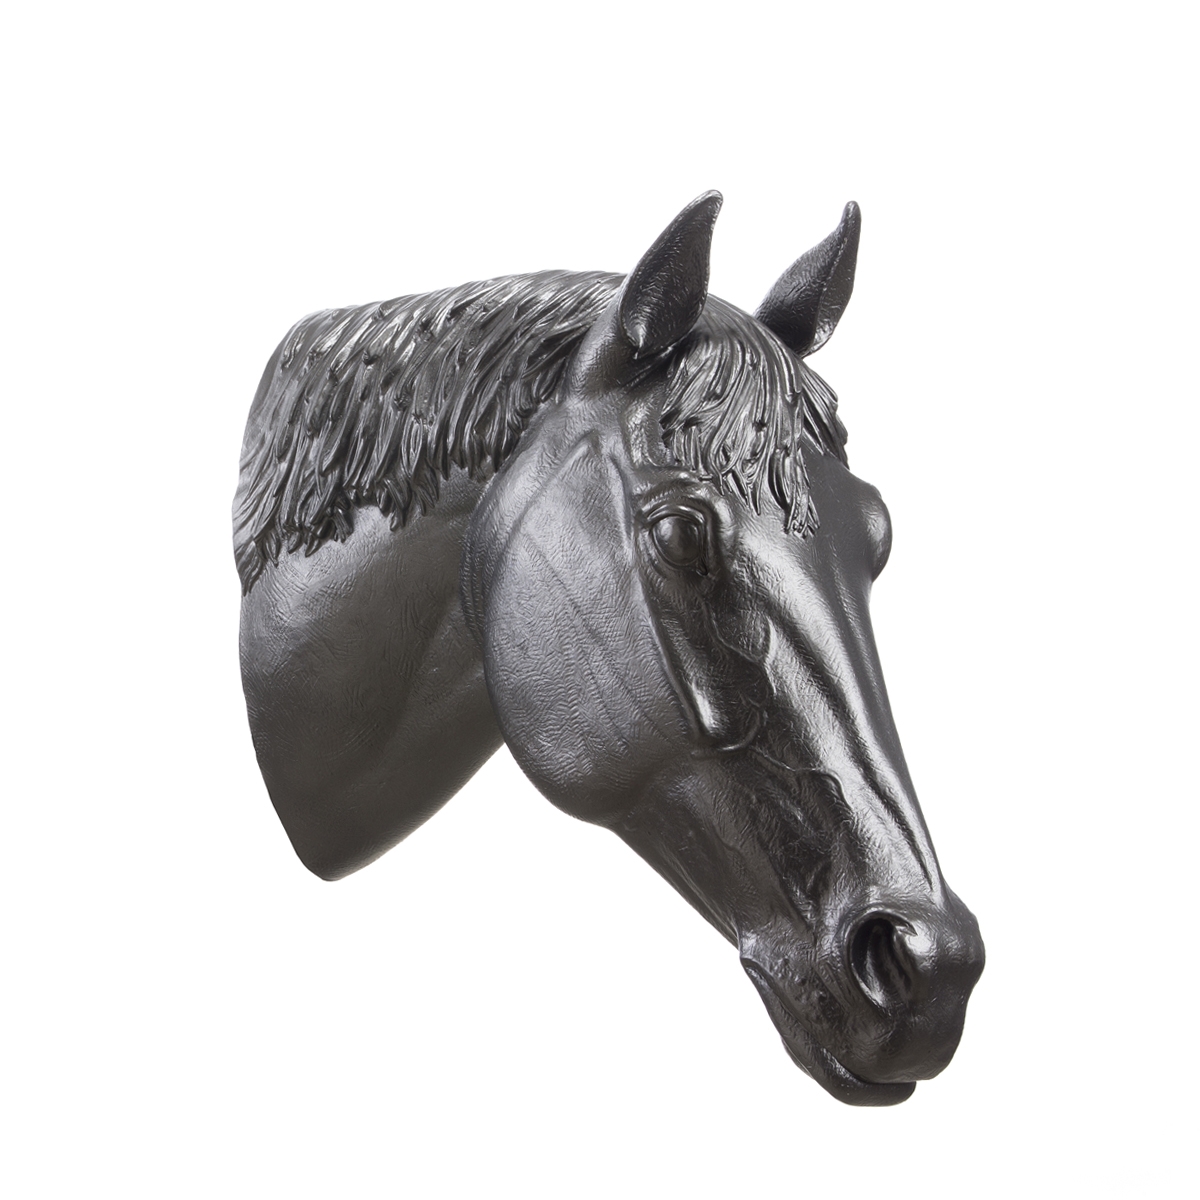 The-little-boutique-ottmar-horl-cheval-horse-7